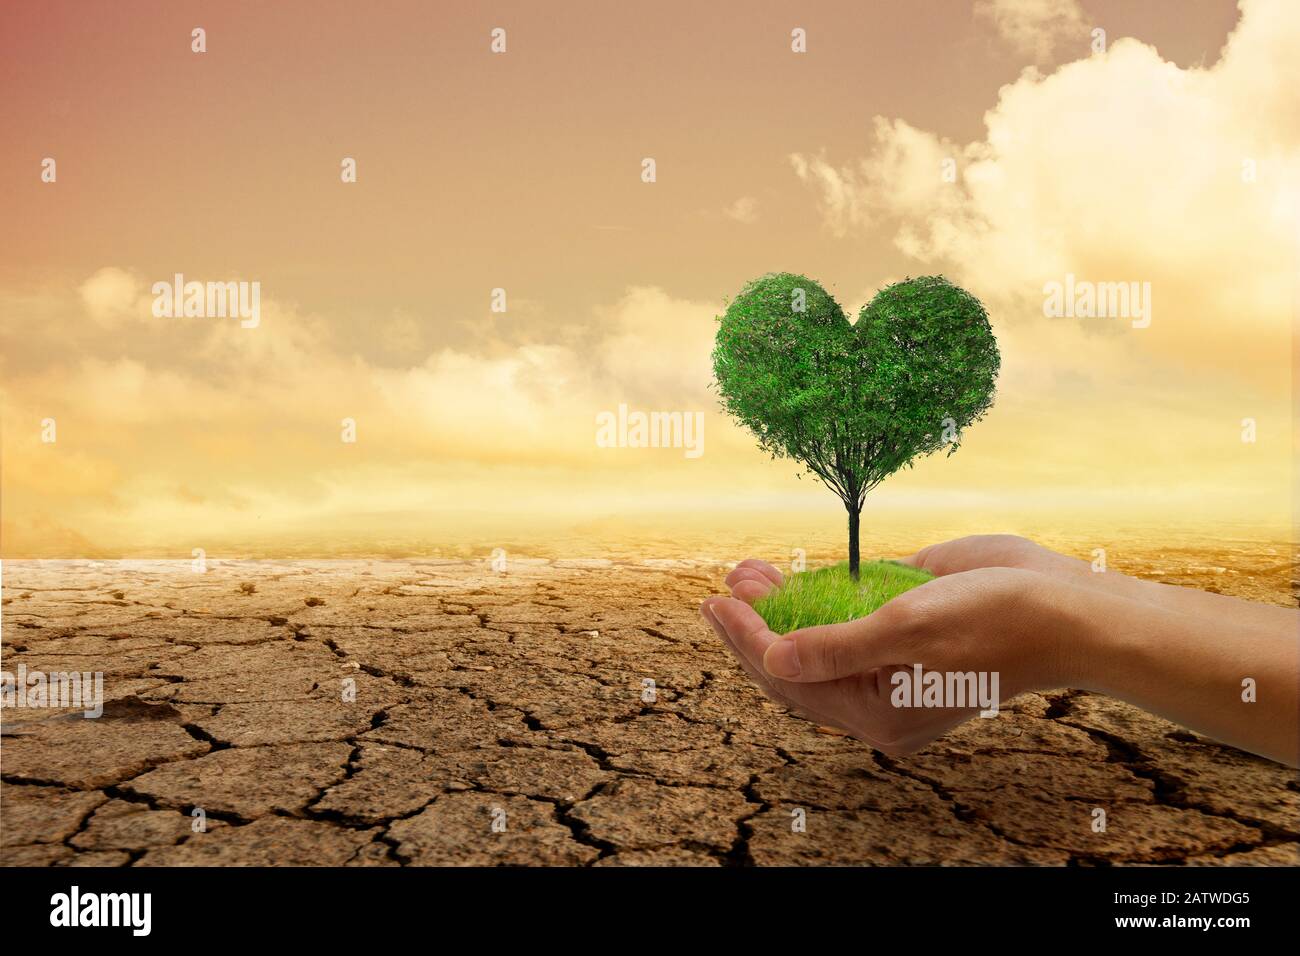 Problemi ambientali, Proteggere la natura e salvare il mondo . Un piccolo albero verde di cuore in mano, pronto a piantare, con uno sfondo arido e scoppiettante Foto Stock